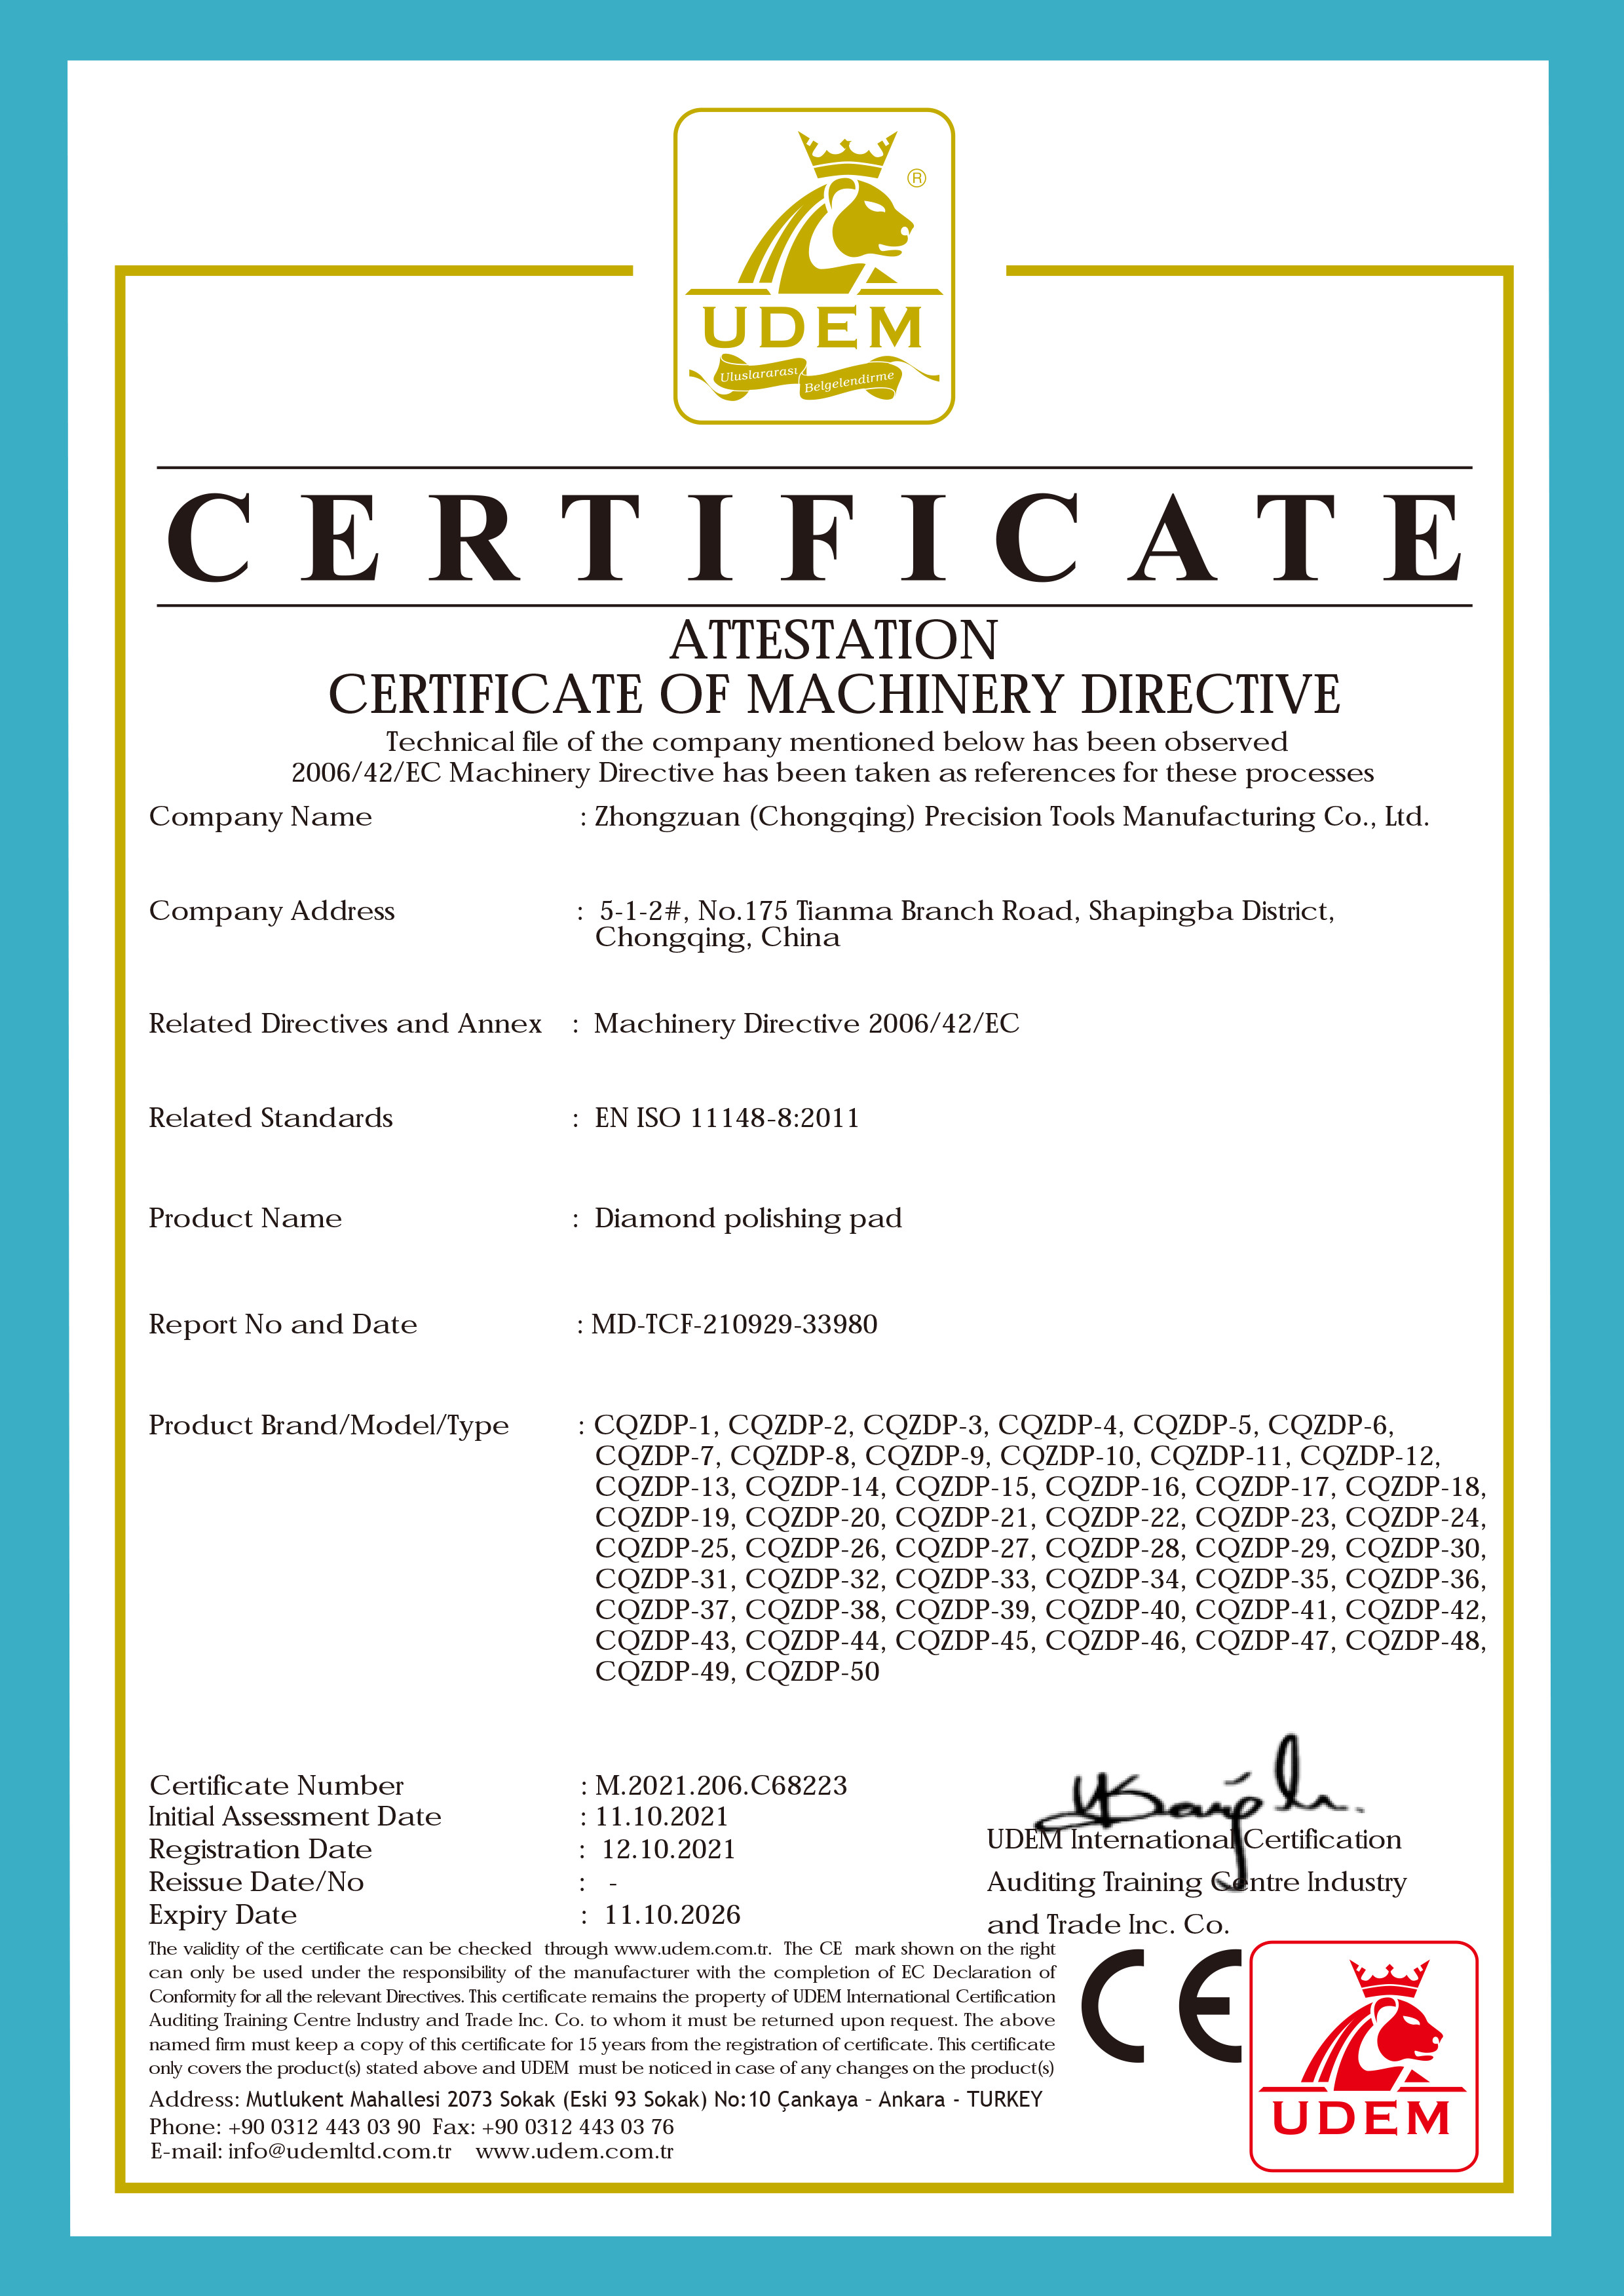 Zhongzuan (Chongqing ) Precision Tools Manufacturing Co., Ltd. Certifications